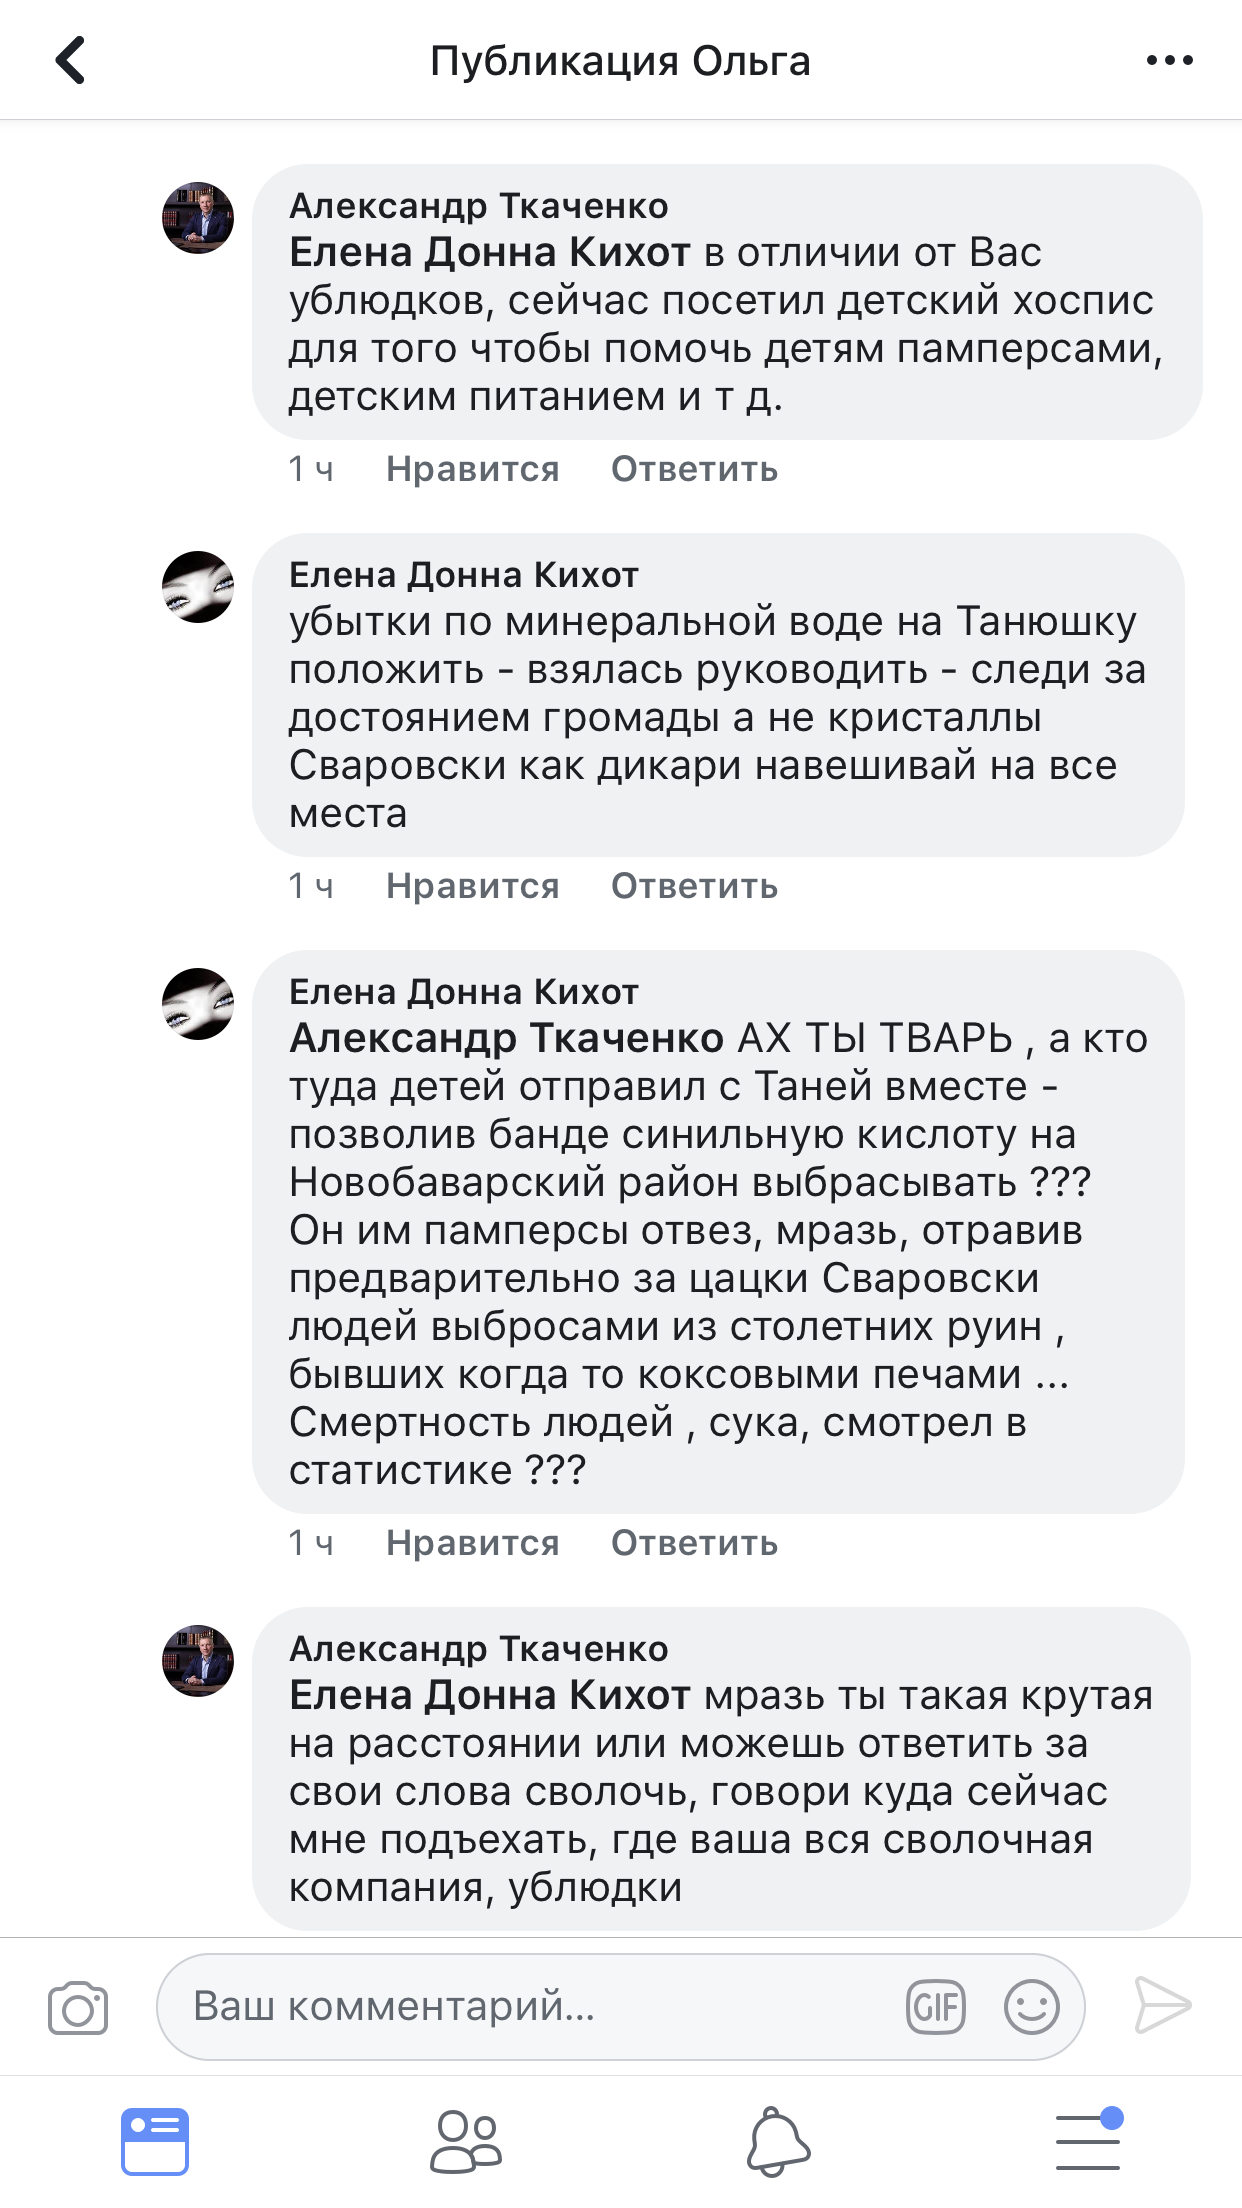 Харьковский депутат Ткаченко обозвал избирателей «ублюдками», «сволотой» и «подонками», - СМИ